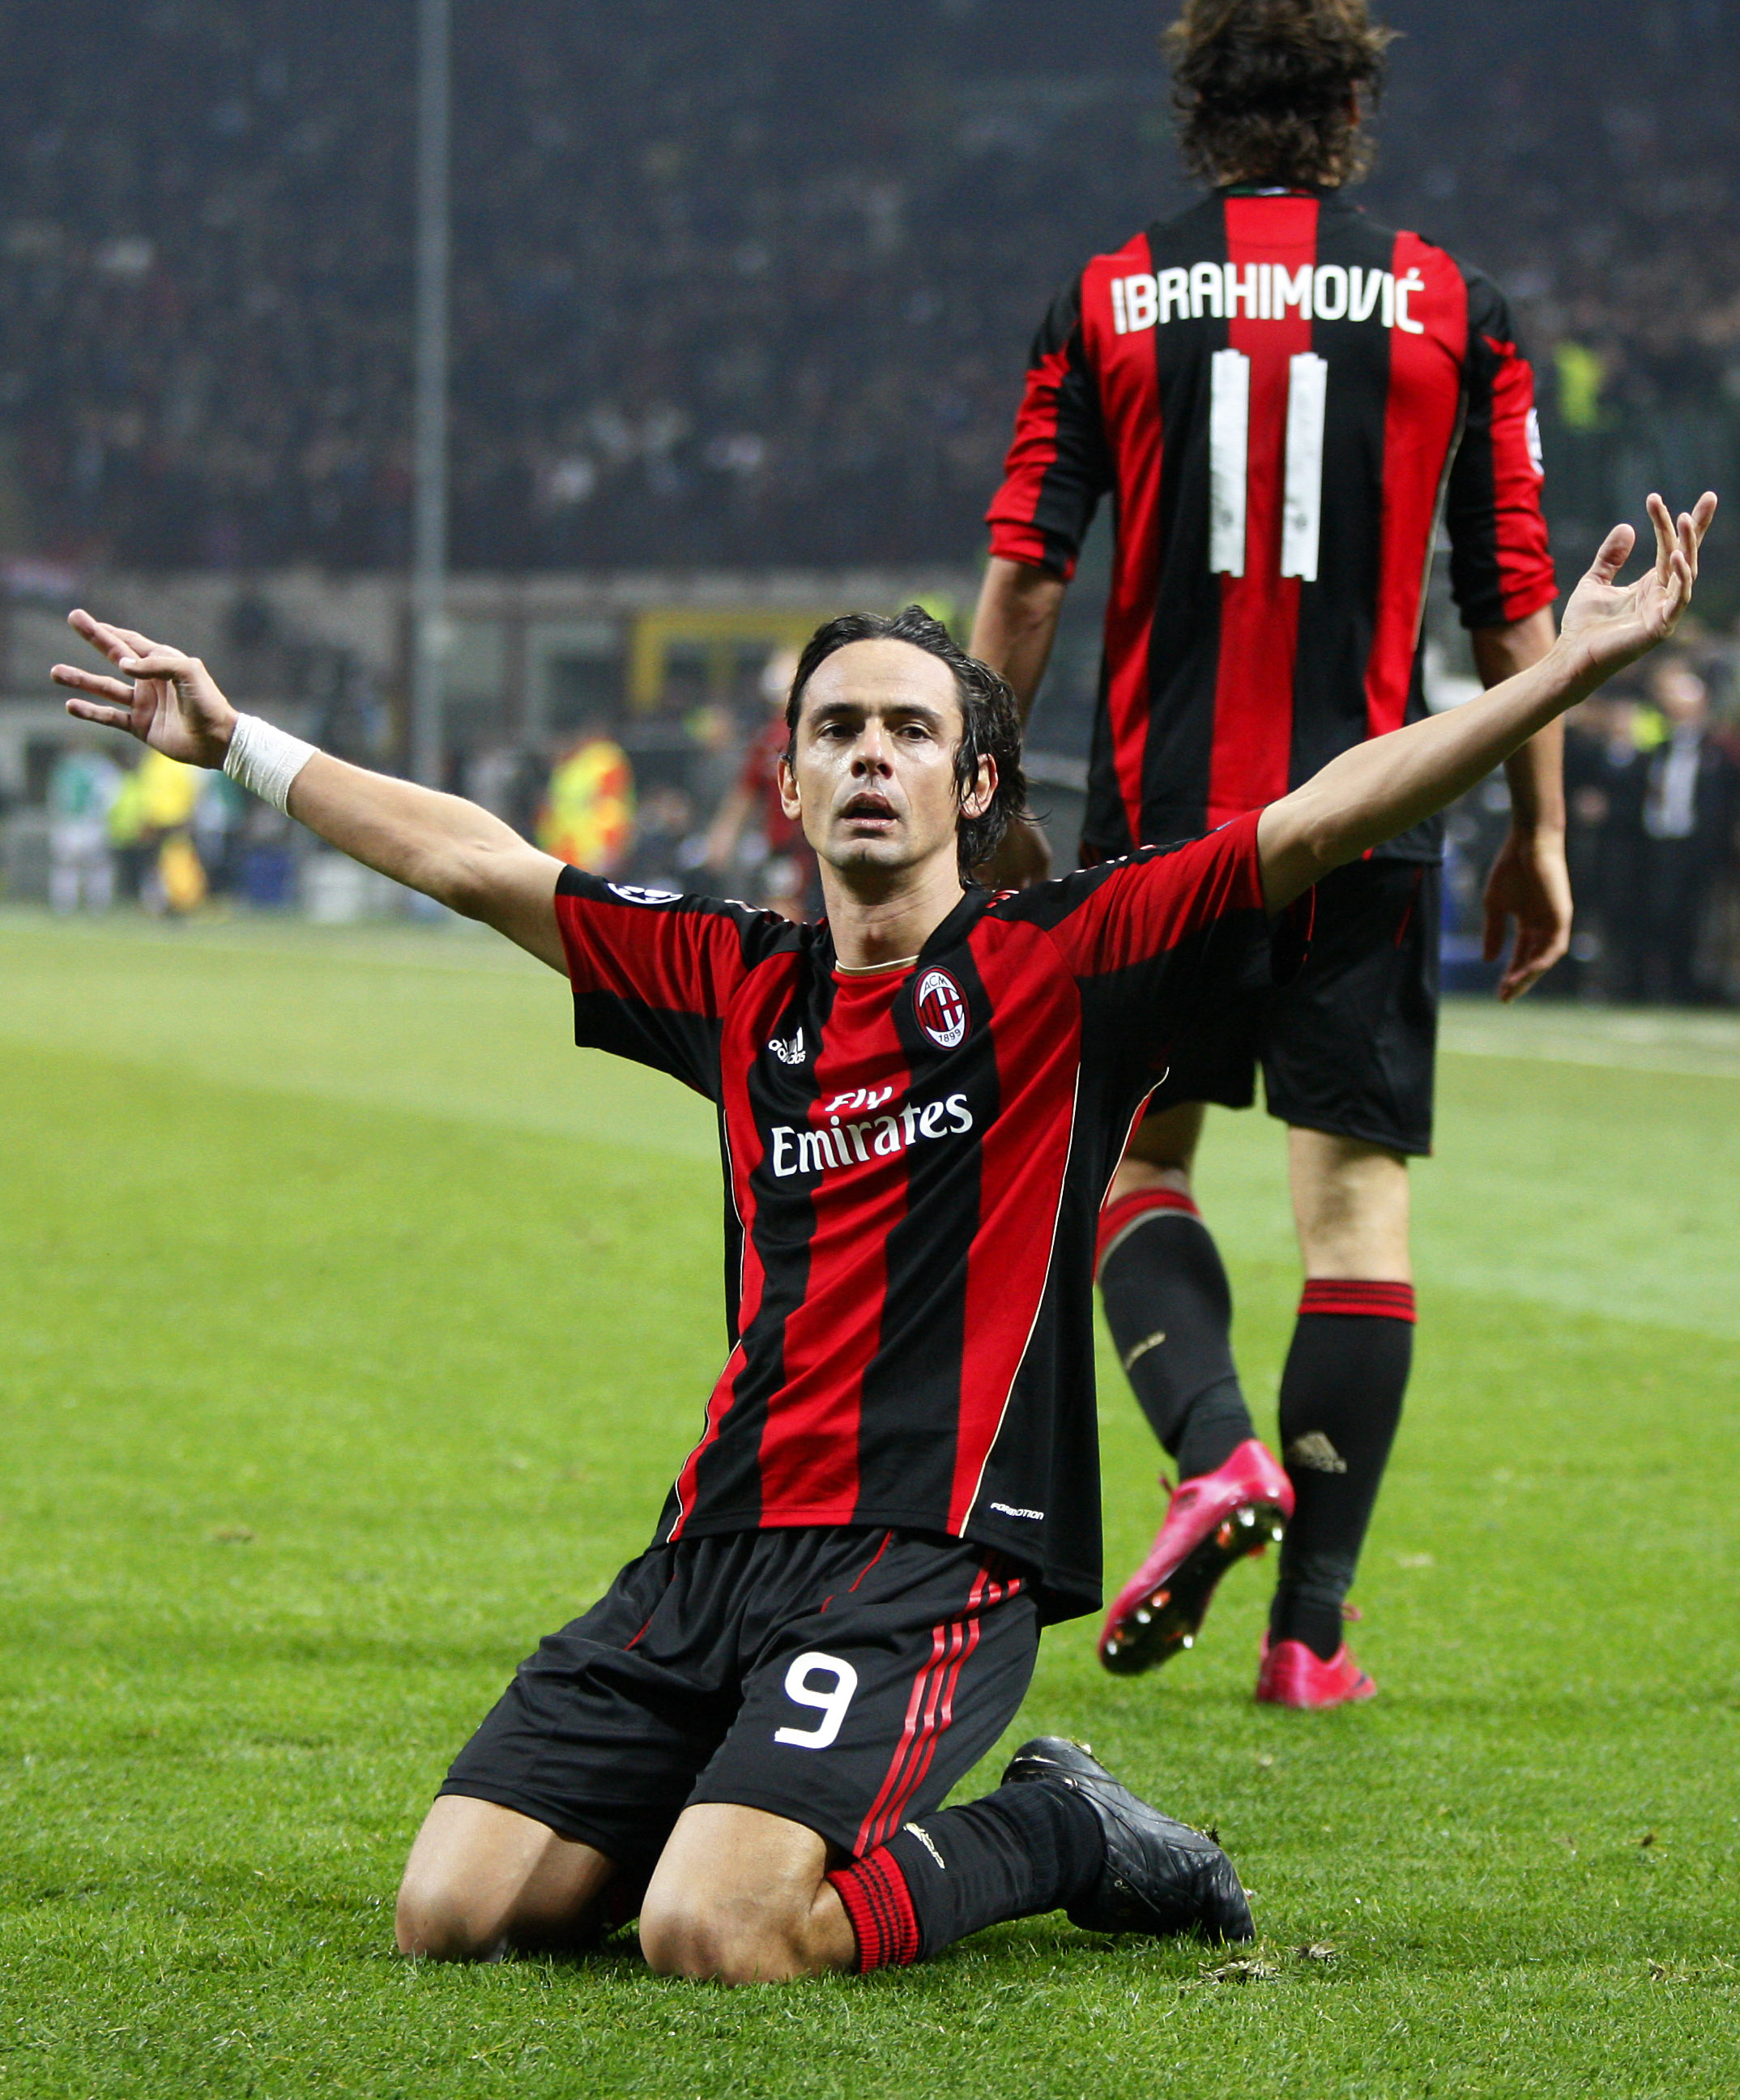 Agons favoritspelare "Pippo" Inzaghi med spelaren som Agon ofta jämförs med.